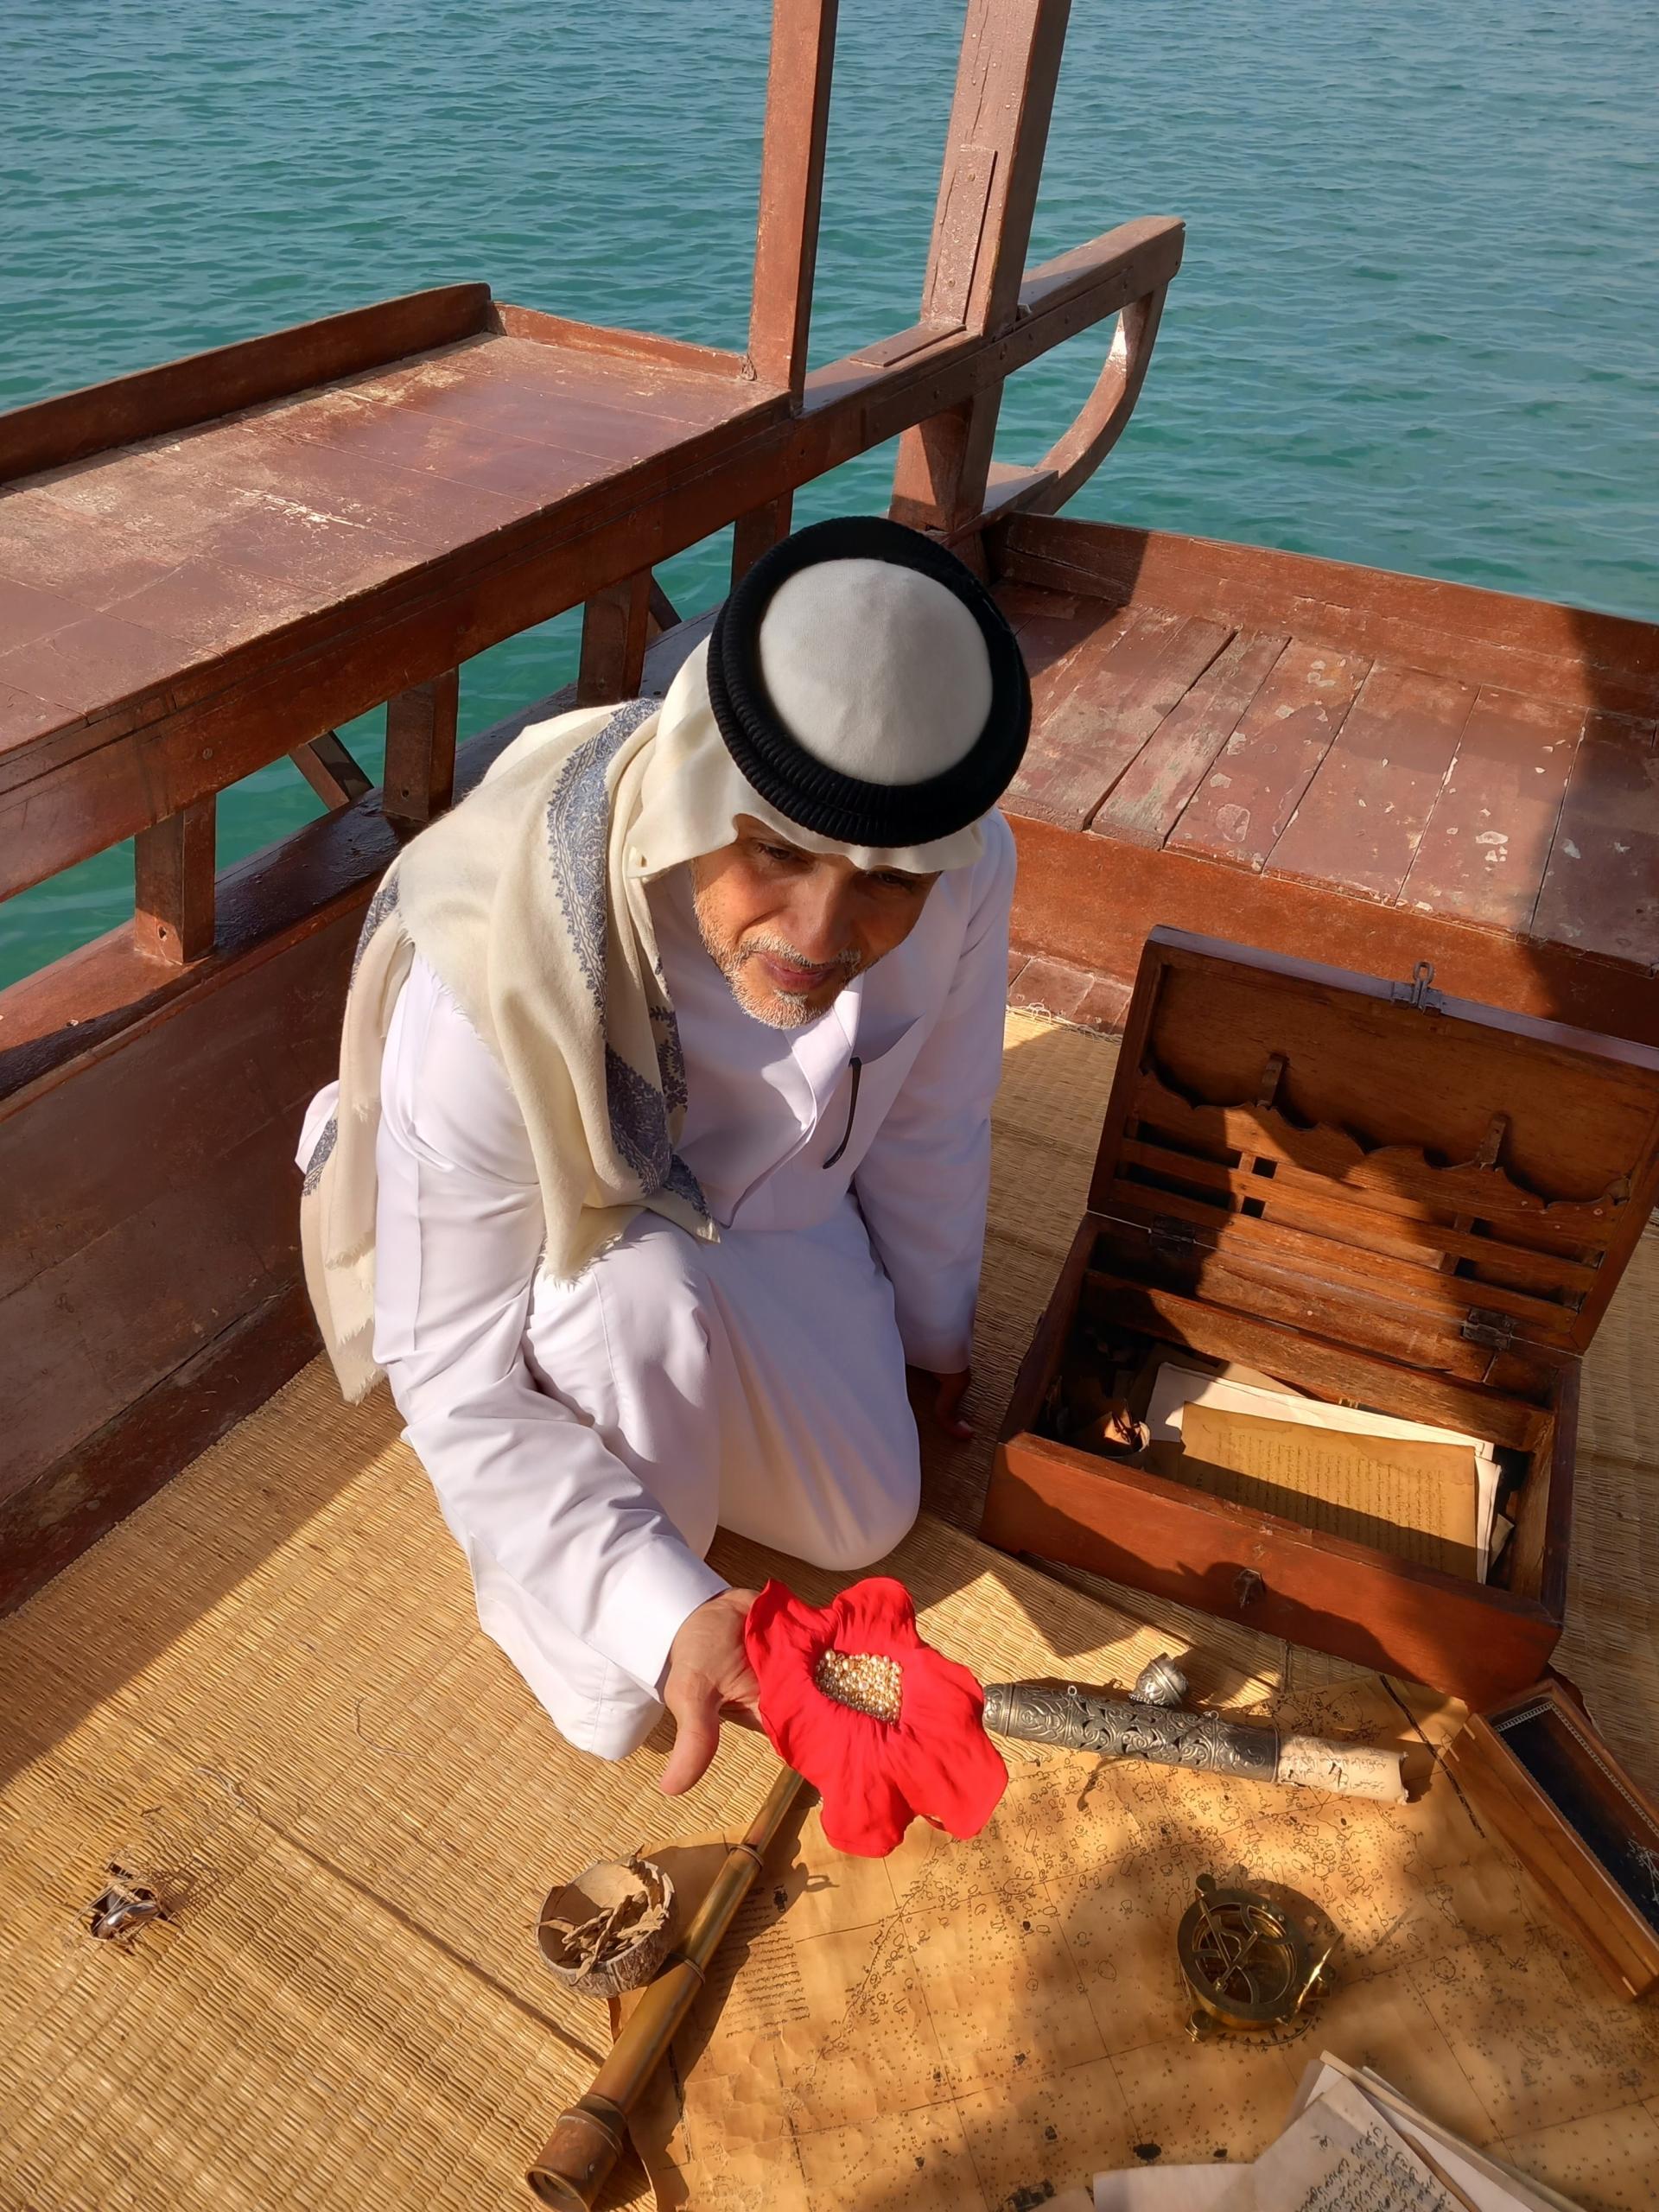 Pestovateľ perál v Perzskom zálive pre HN: V našom emiráte nadväzujeme na tisícročné tradície predkov